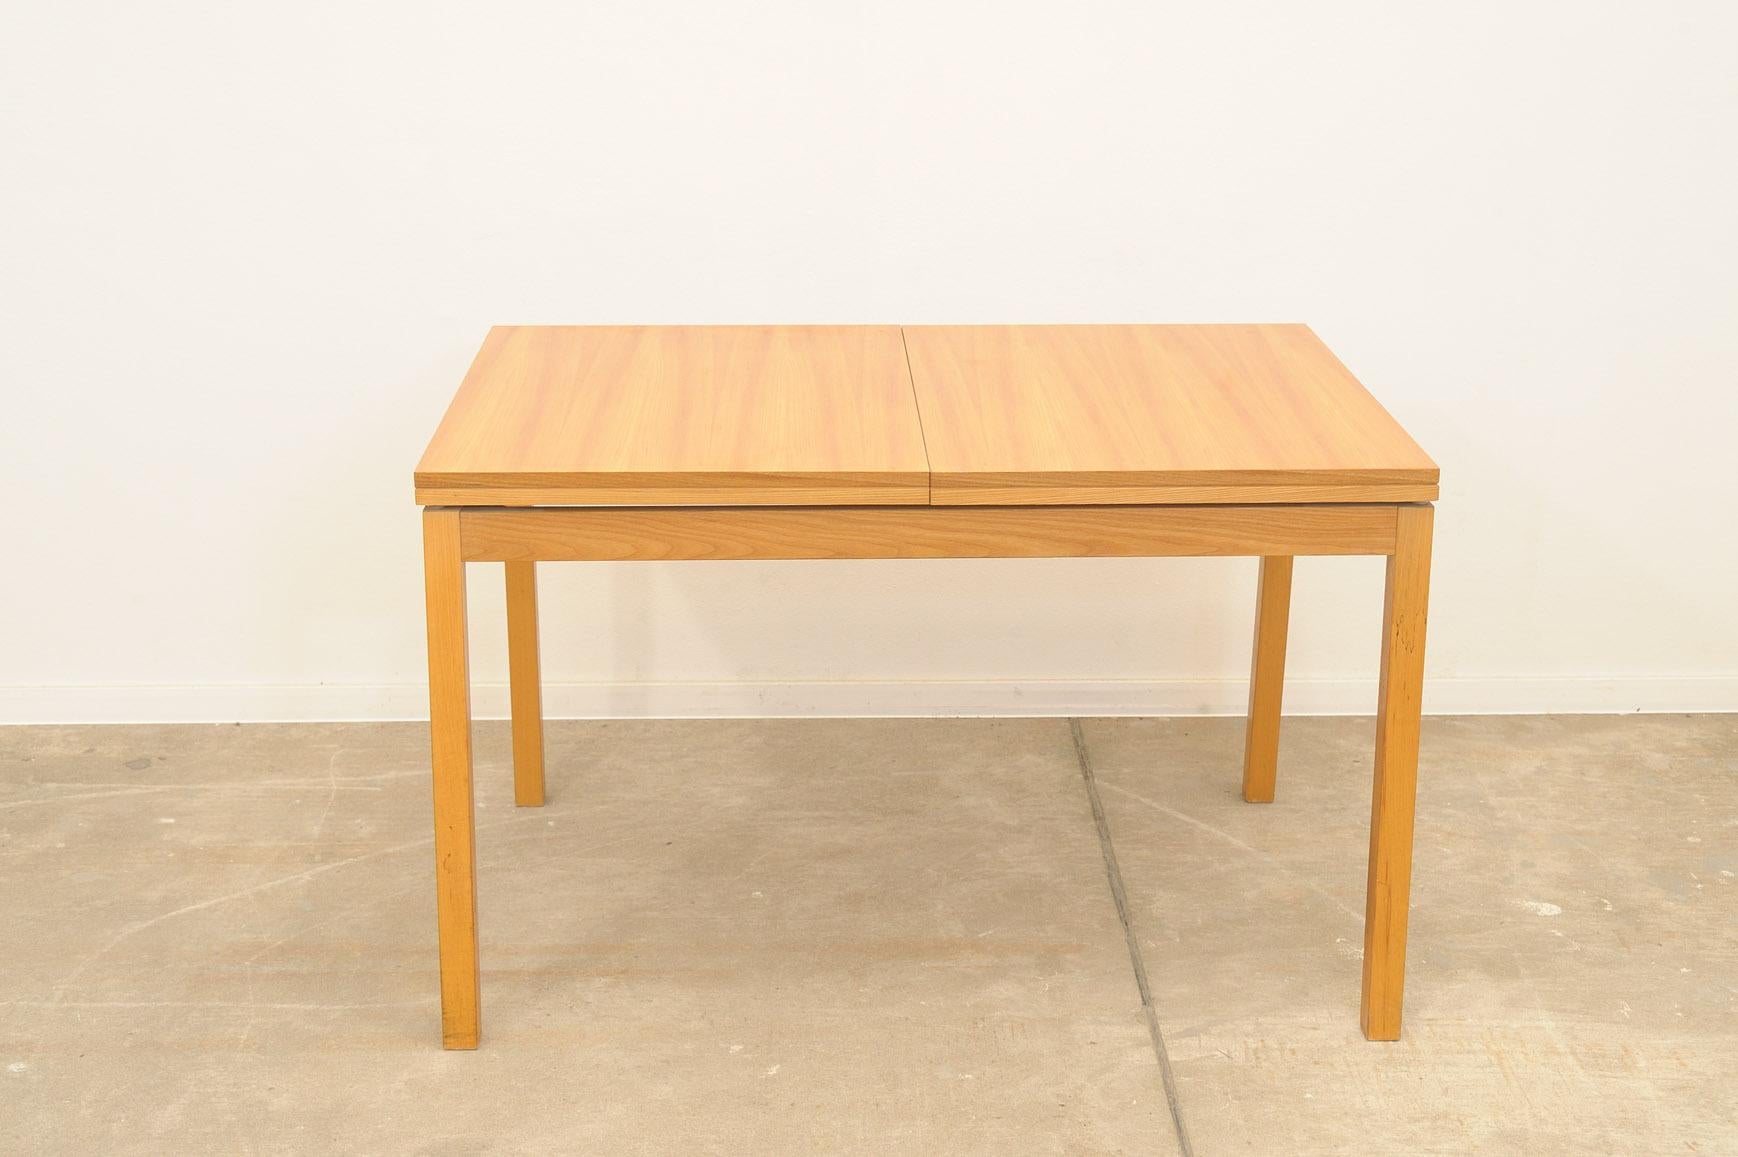 Dieser verstellbare Esstisch wurde in den 1970er Jahren von der Firma JITONA in der ehemaligen Tschechoslowakei hergestellt.  Es ist aus Ulmenholz gefertigt.  Die Länge ist verstellbar von 120 cm bis 170 cm. Der Tisch ist in einem sehr guten